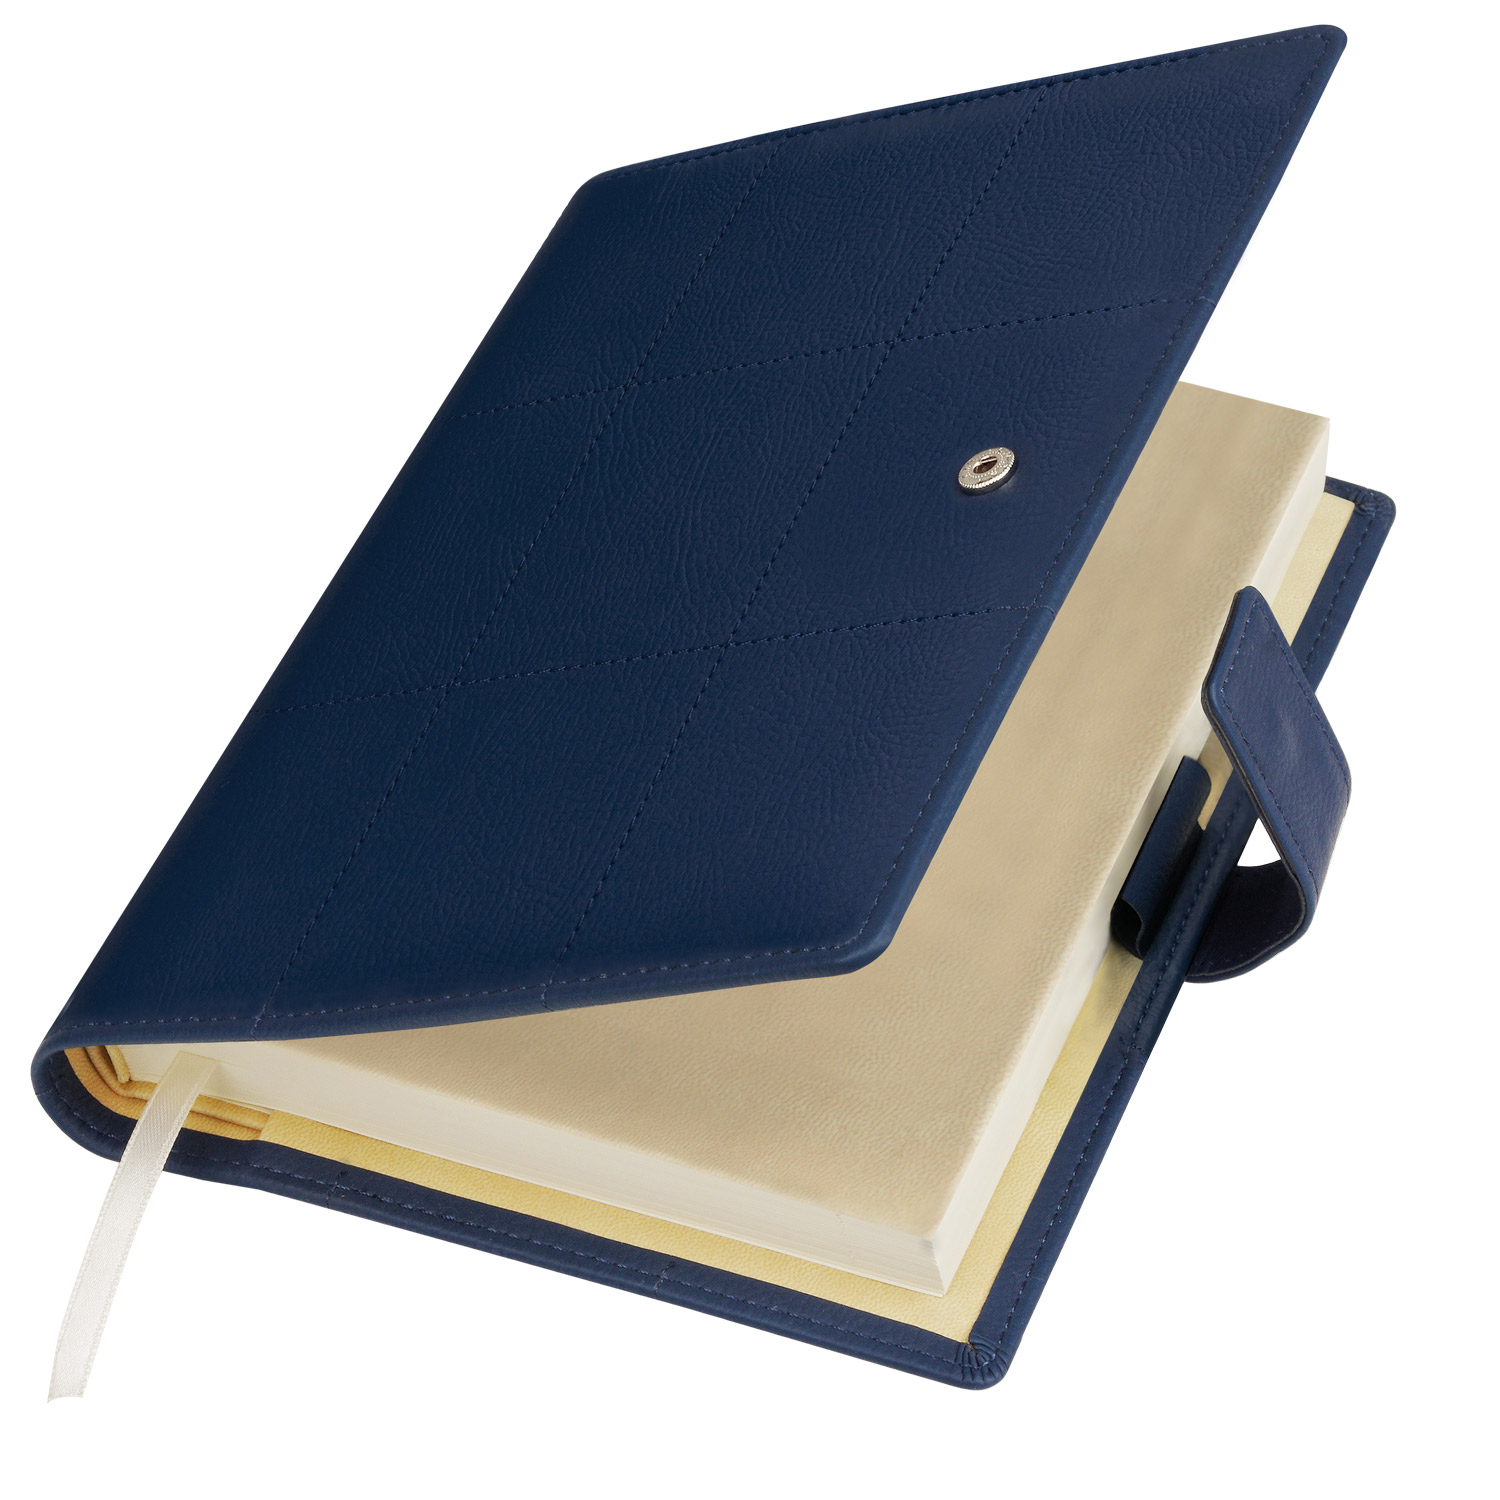 Артикул: A21501.030 — Ежедневник-портфолио Royal, синий, обложка soft touch, недатированный кремовый блок, подарочная коробка